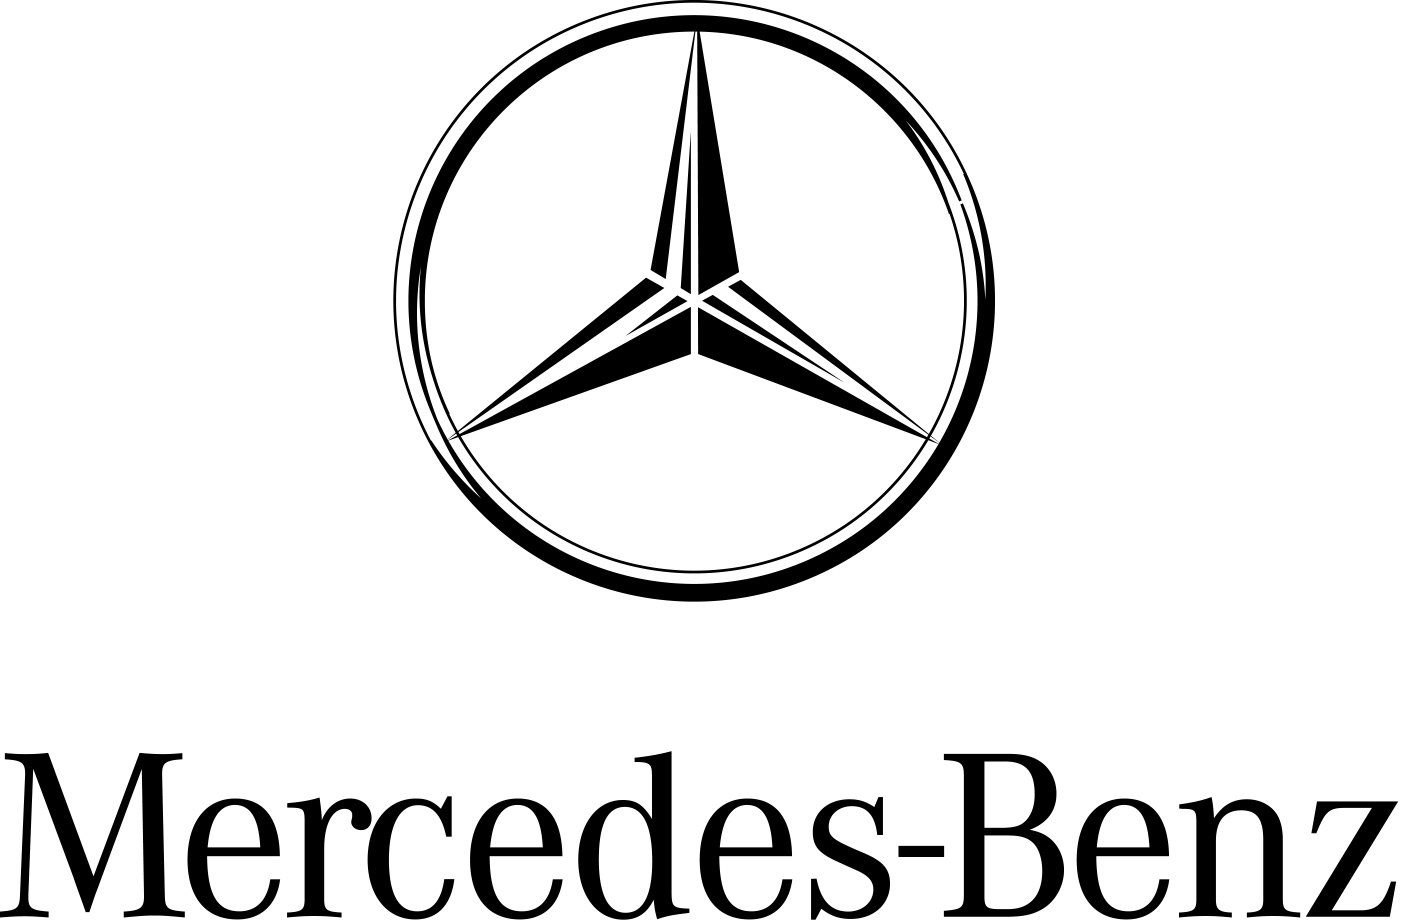                                     Logo của các hãng xe trên thế giới - Mercedes - Benz